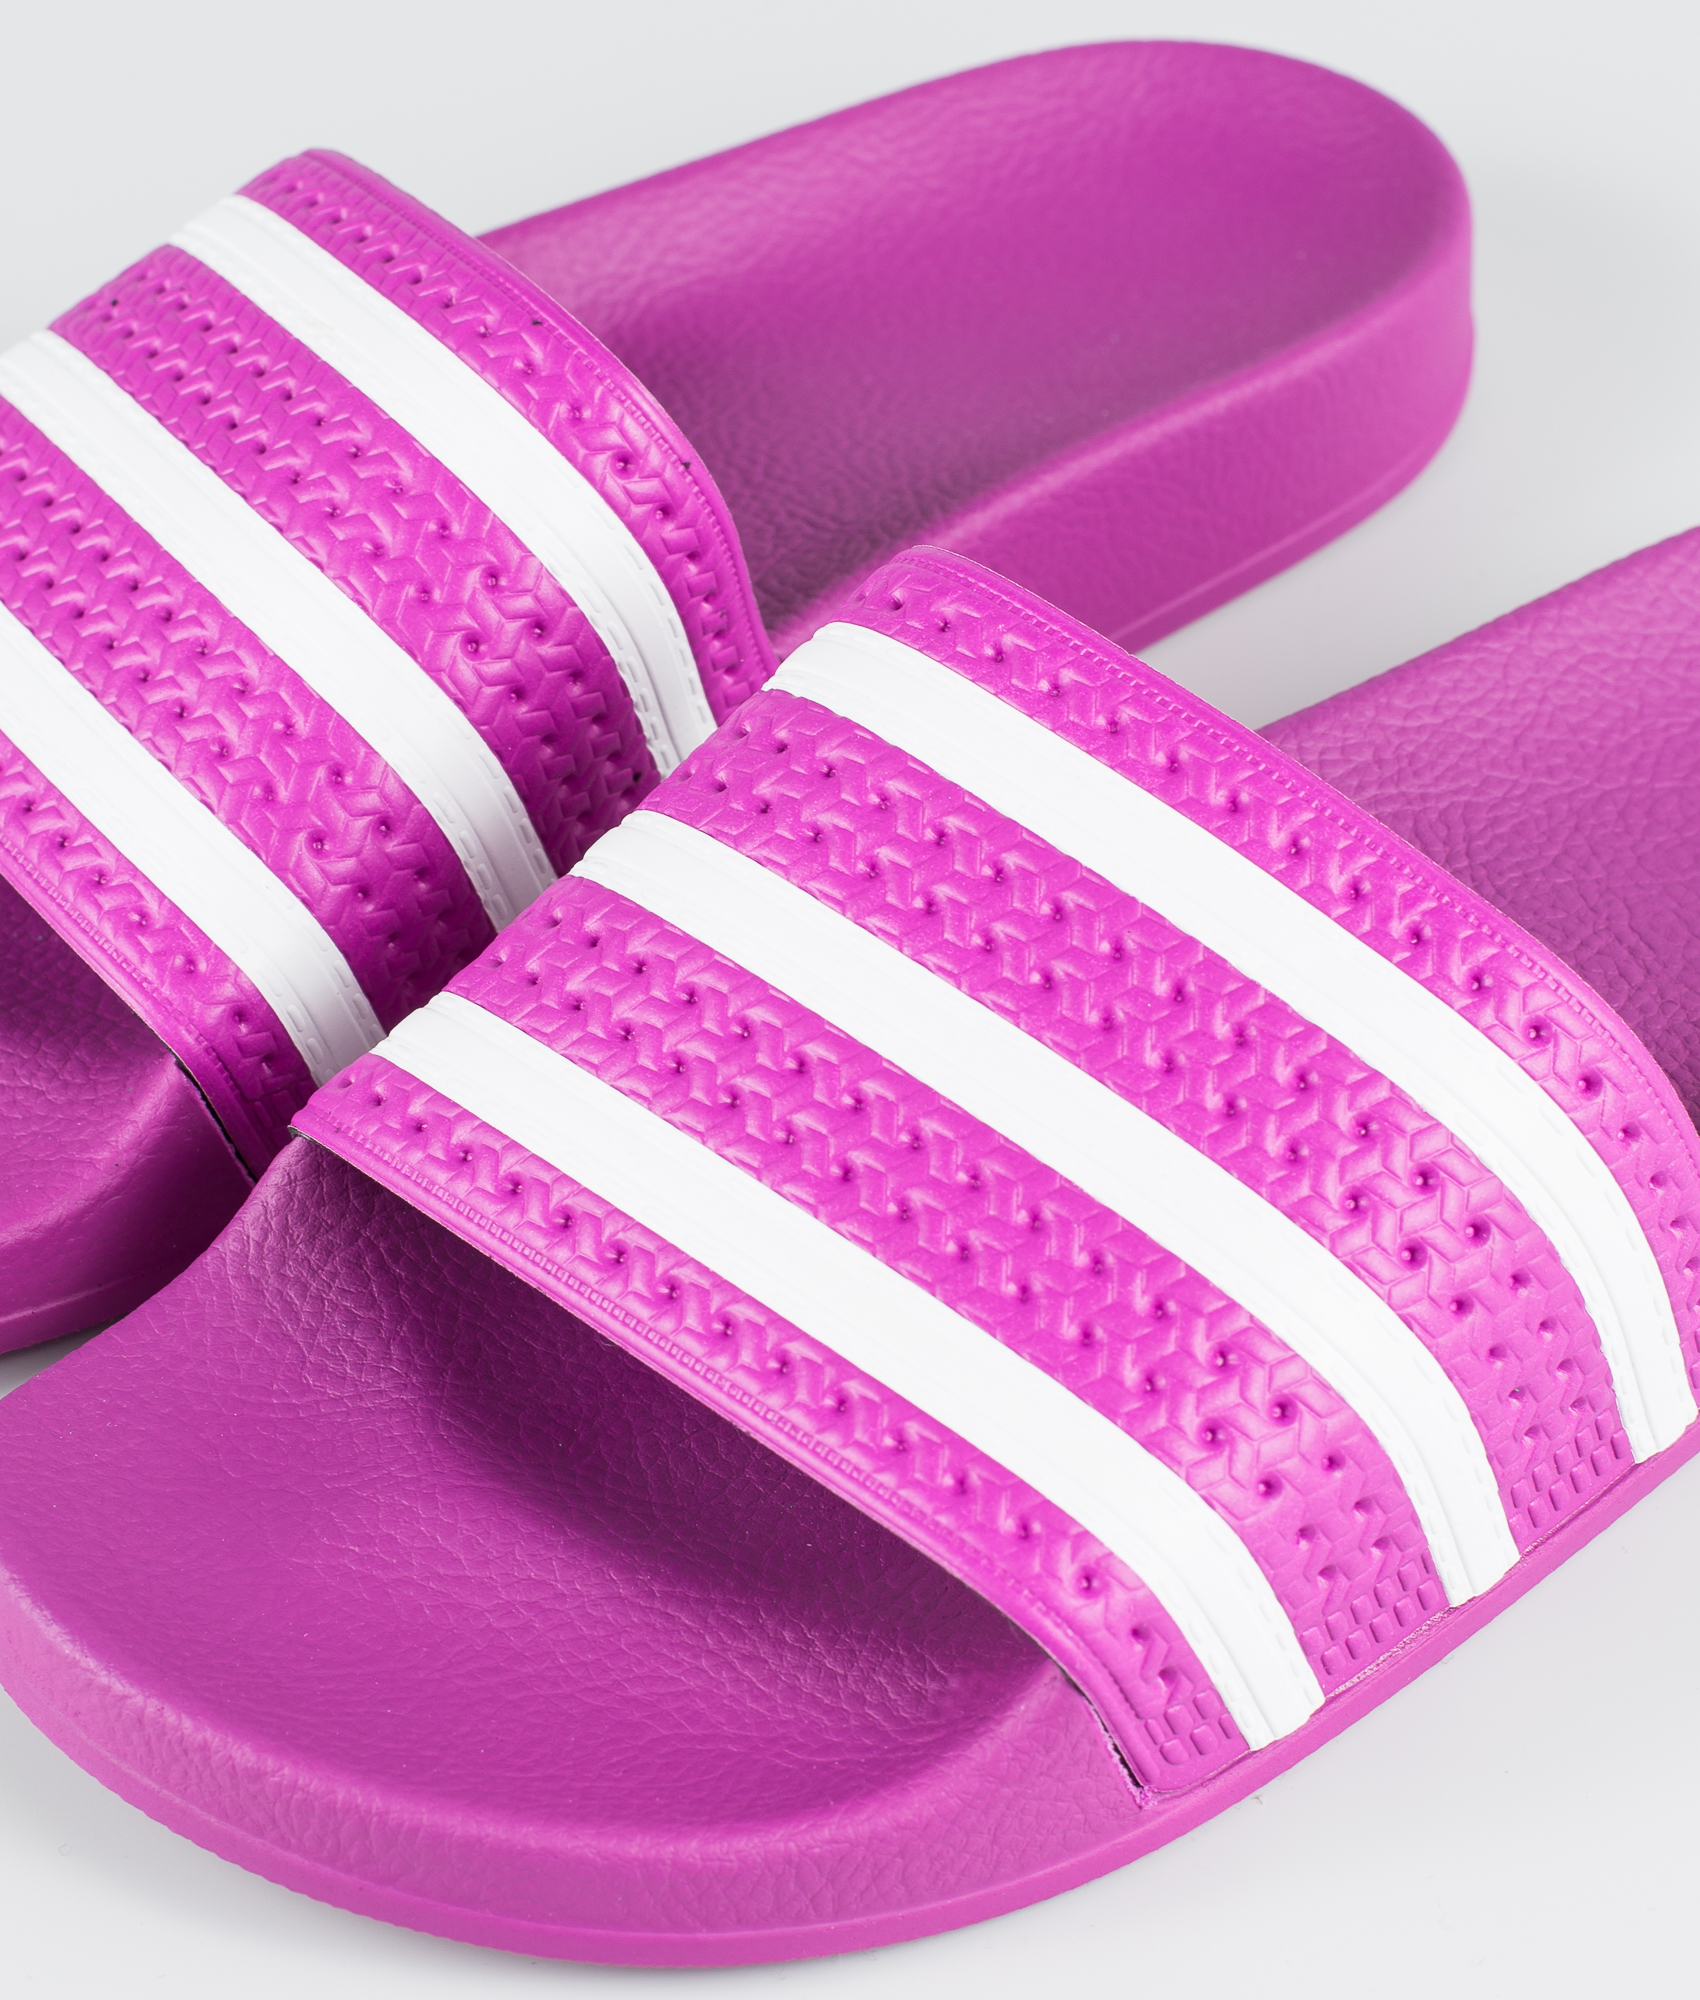 adidas adilette vivid pink